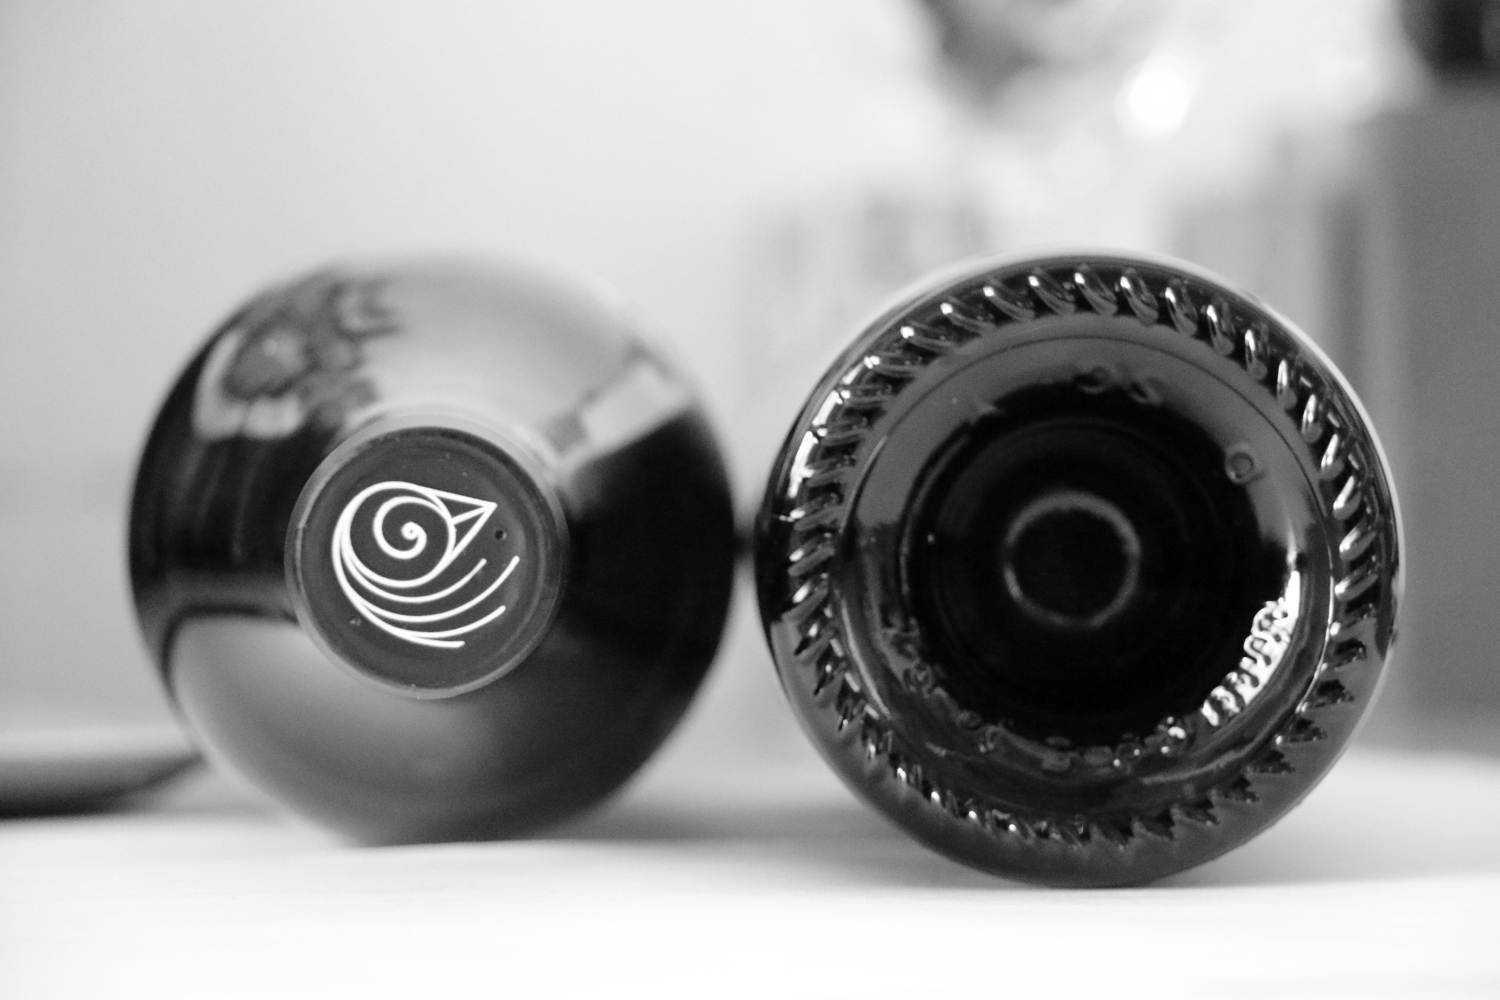 Dégustation comparative : Les multifacettes du Pinot noir